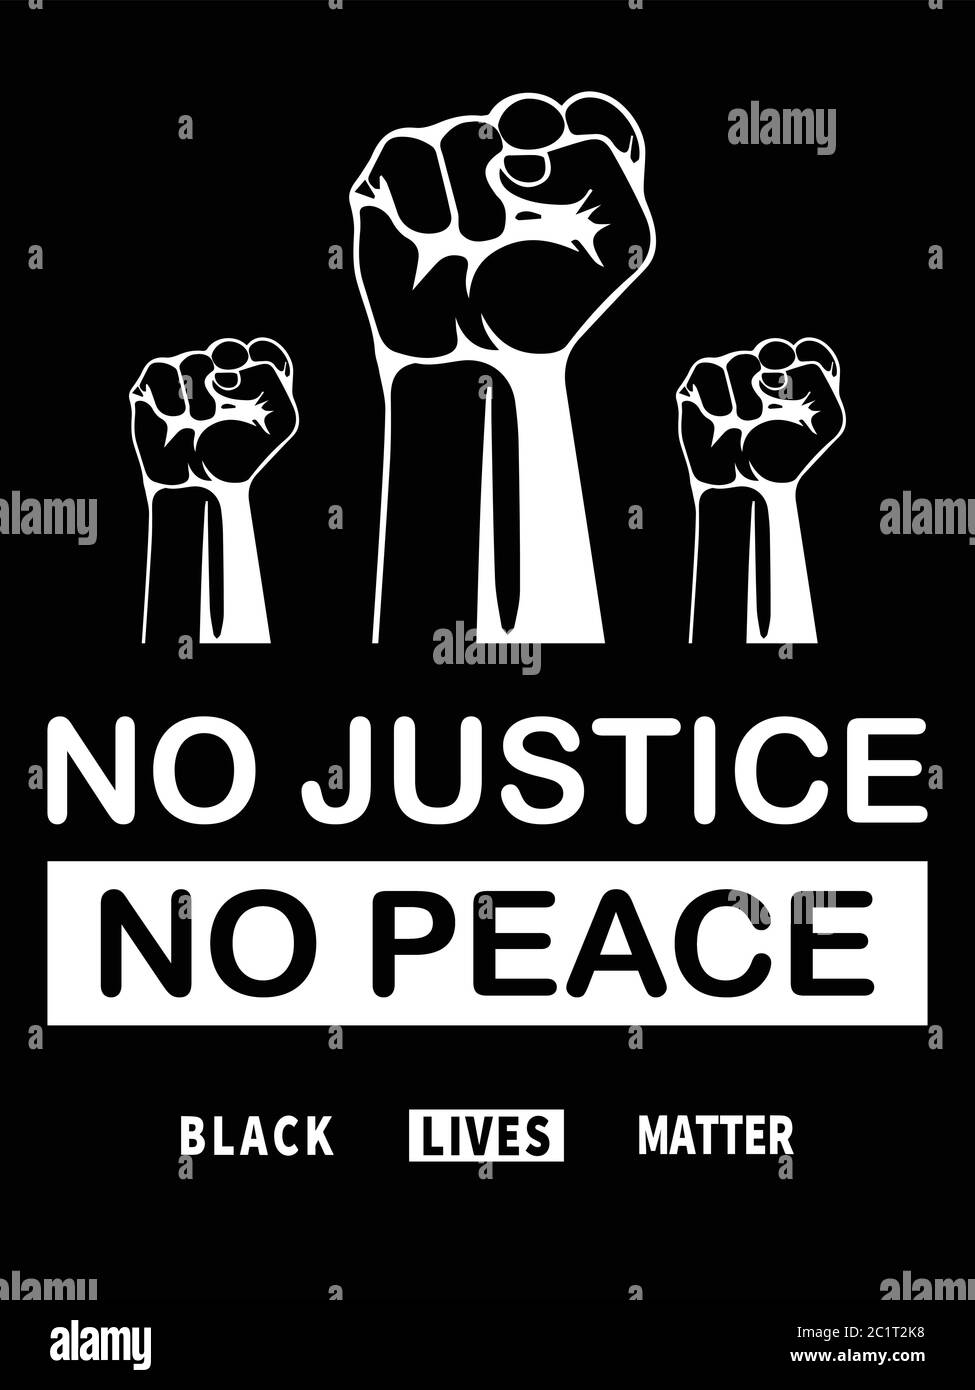 Le vite nere contano. Illustrazione BLM in bianco e nero che raffigura No Justice No Peace with Three Fists. Vettore EPS Illustrazione Vettoriale